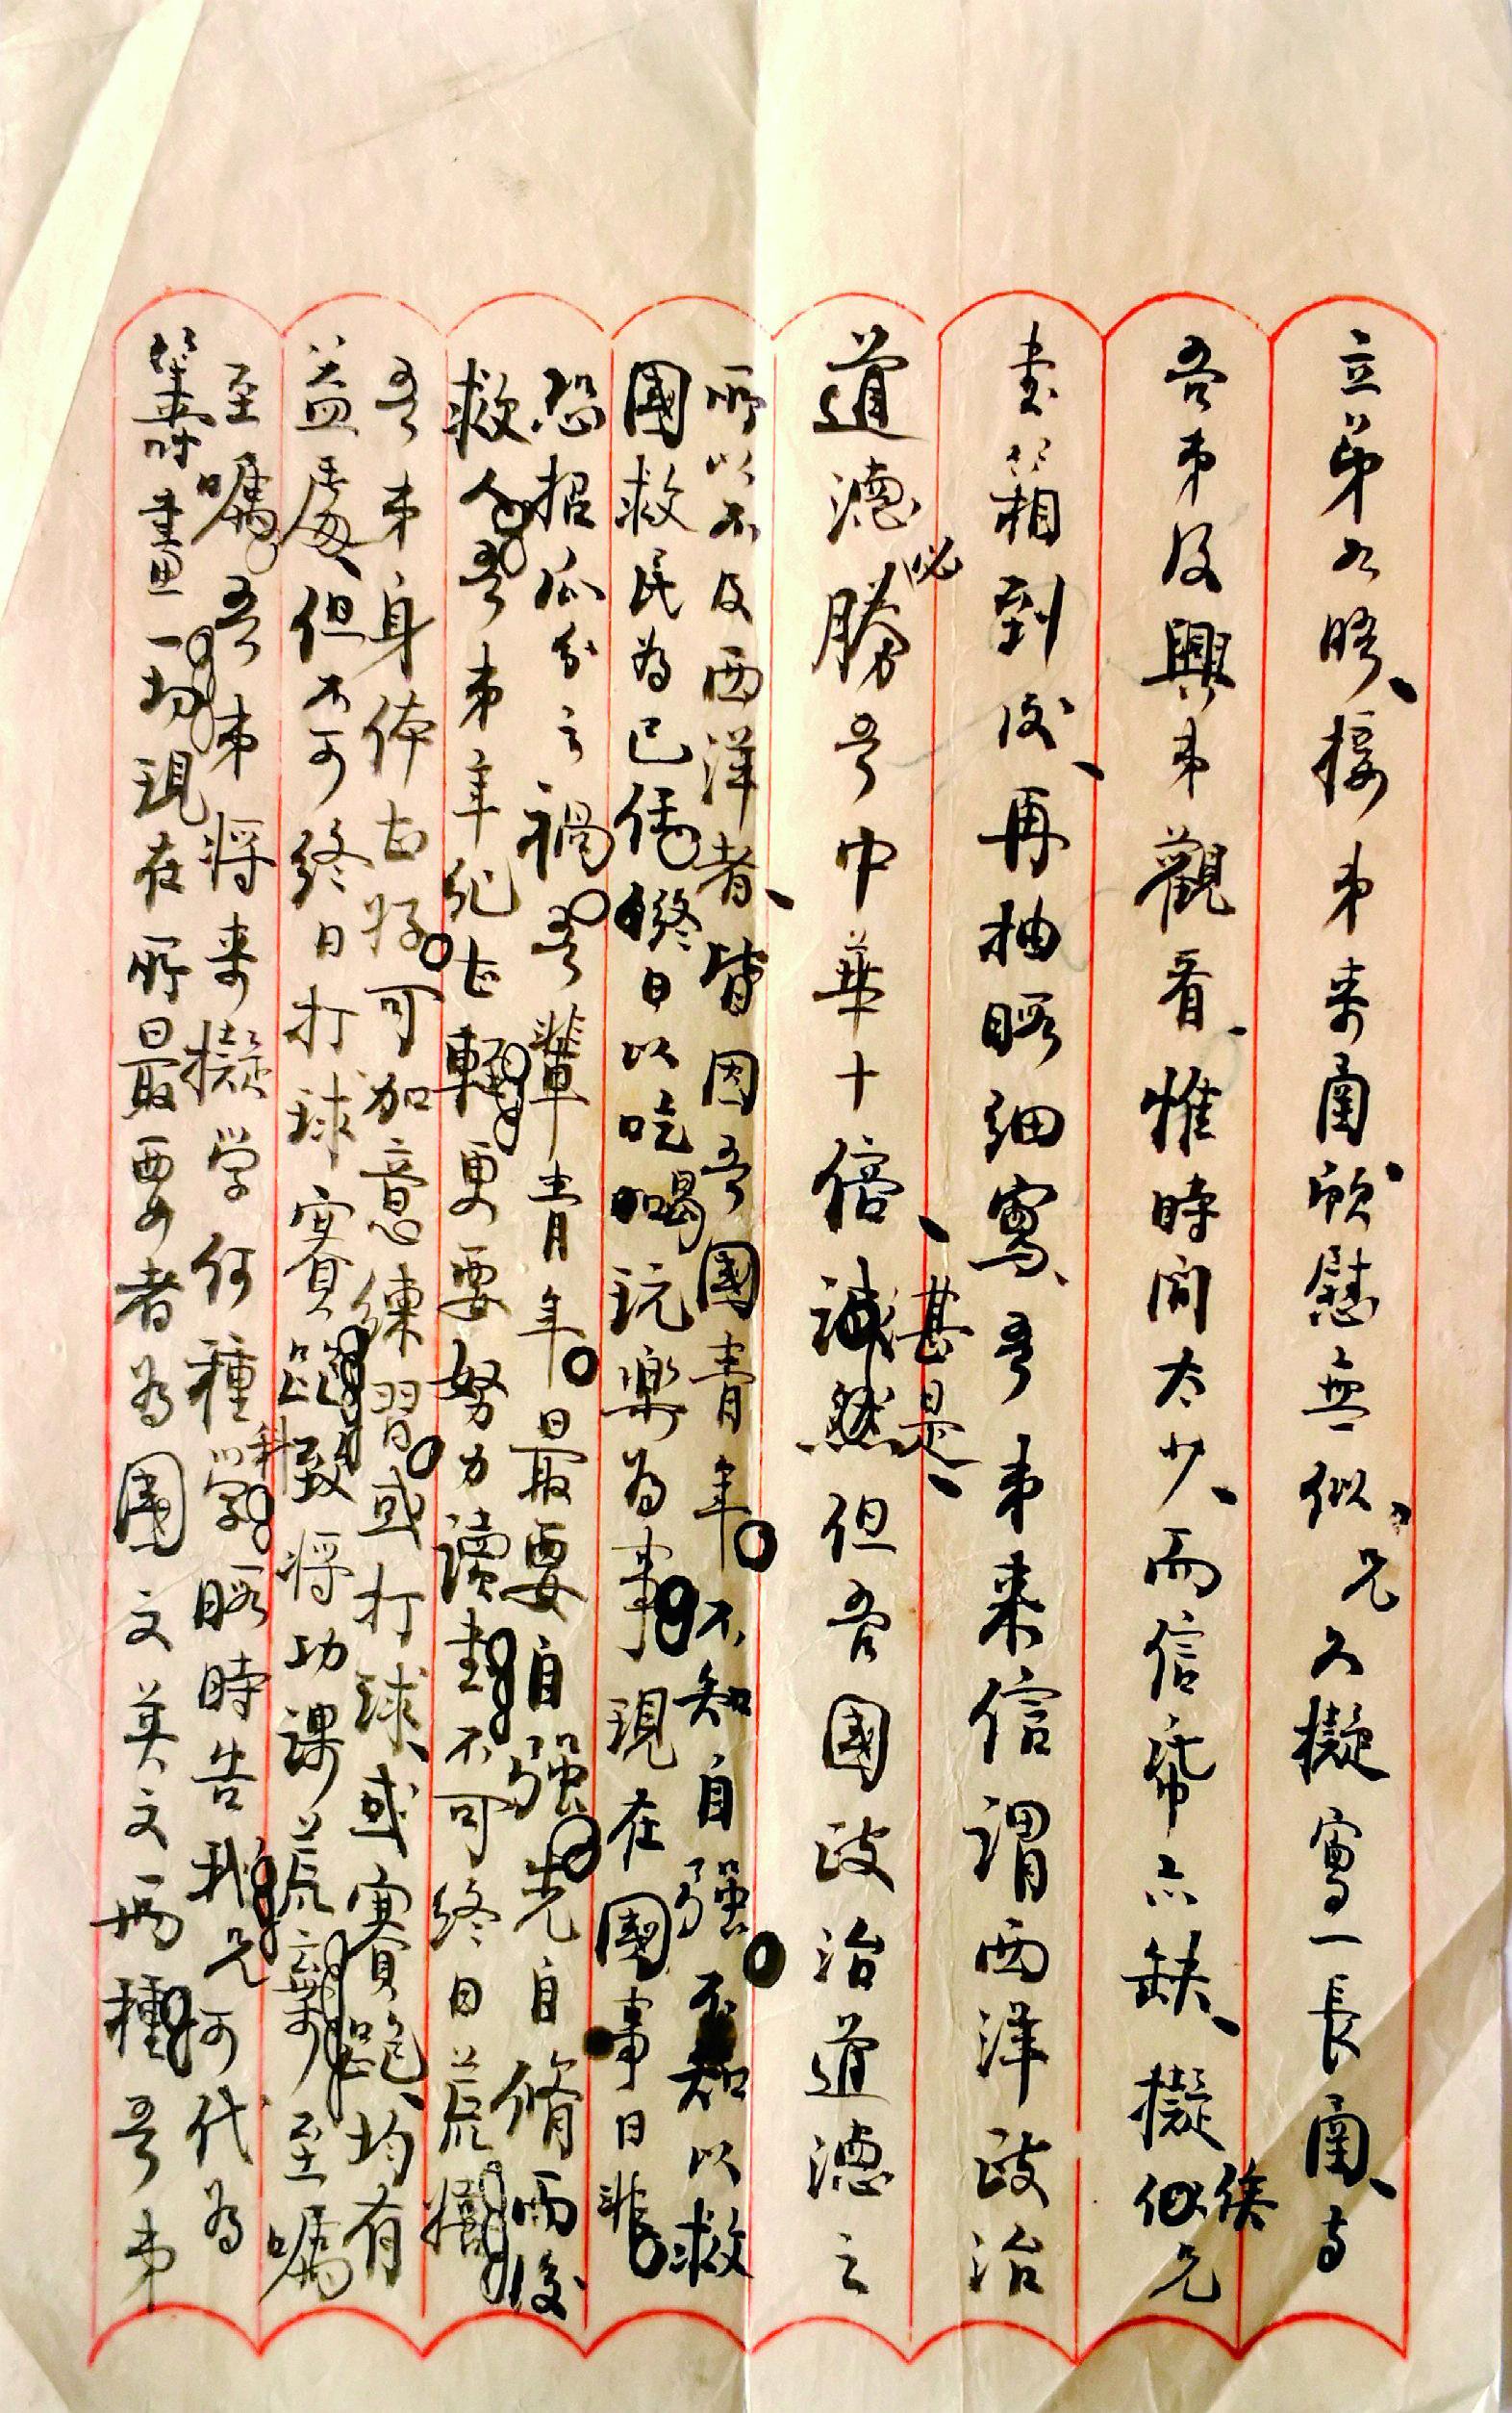 1915年，张辉曾写给郑天挺的家信其中一页